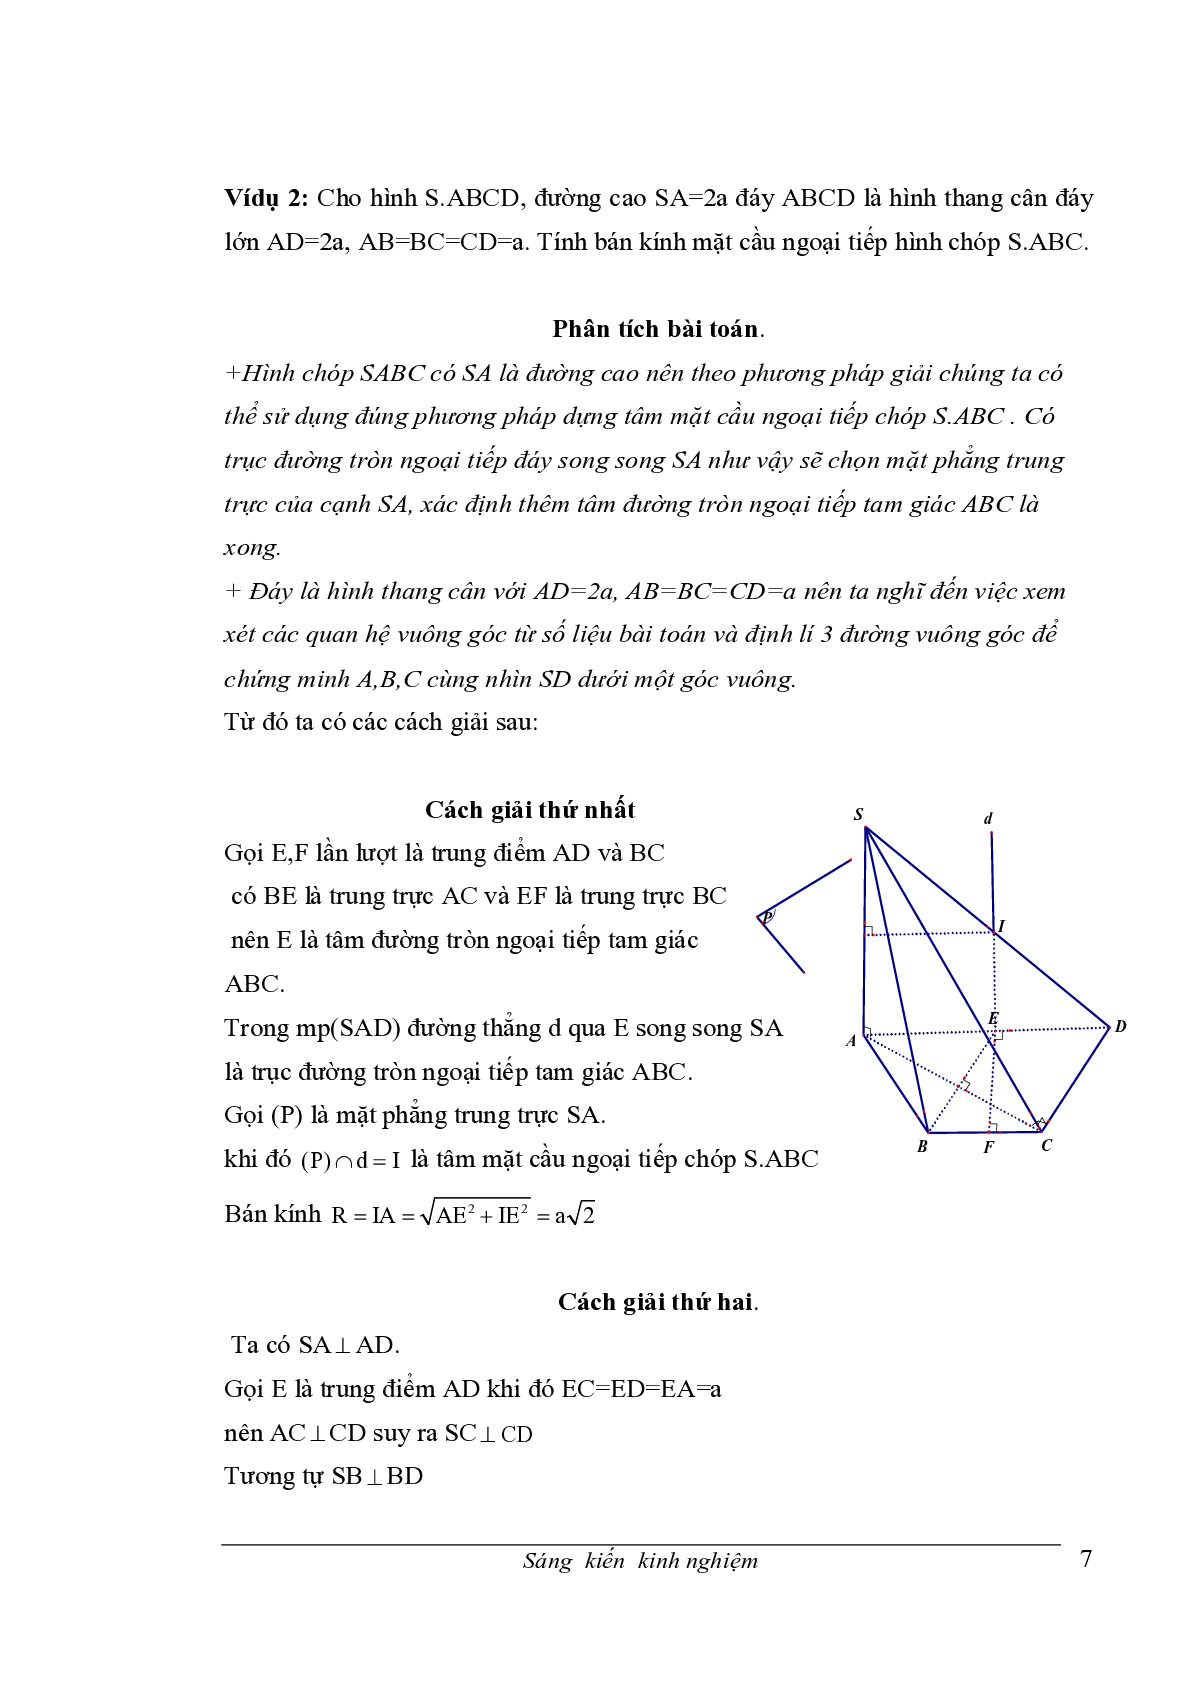 Chuyên đề Mặt cầu ngoại tiếp hình chóp (trang 7)